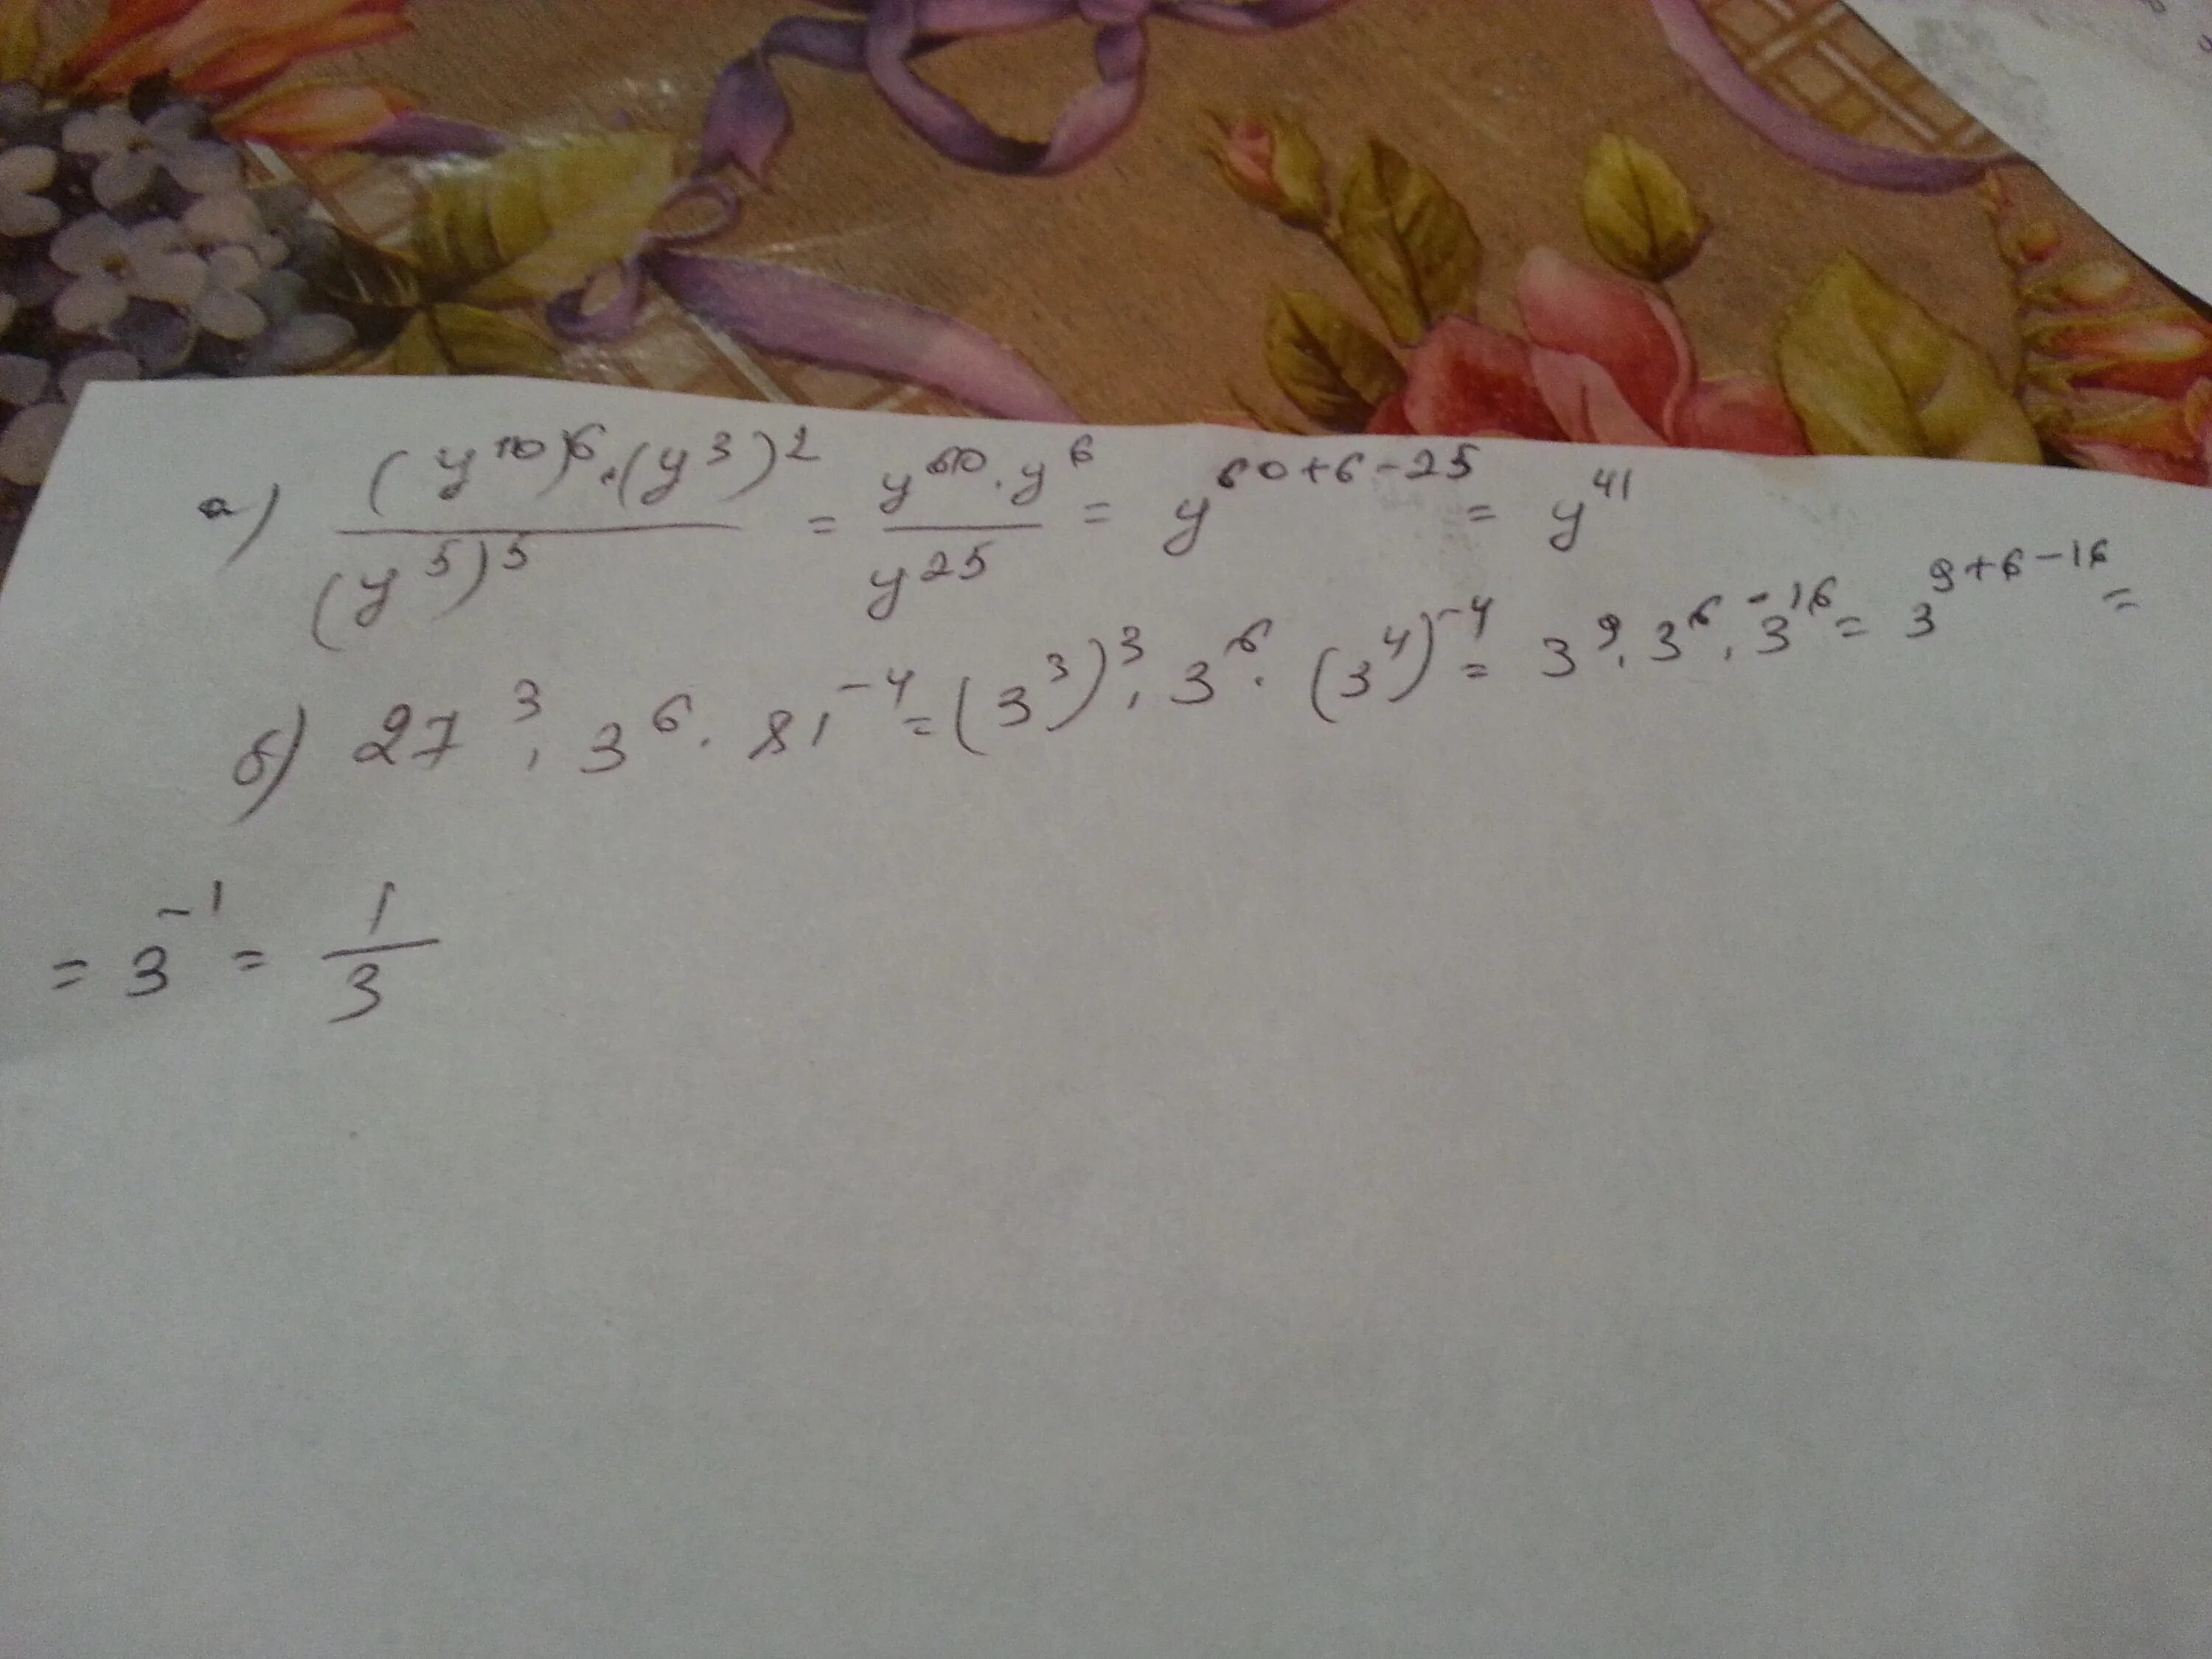 Произведение 7 24. Запишите произведение 7х и 3а+11. Запиши произведение в виде степени (c-y)*(c-y)*(c-y)*...*(c-y) n. Записать произведение в виде степени(-6)*(-6)*(-6)*(-6)*(-6)*(-6). Запишите произведение 7x и 3a+11.